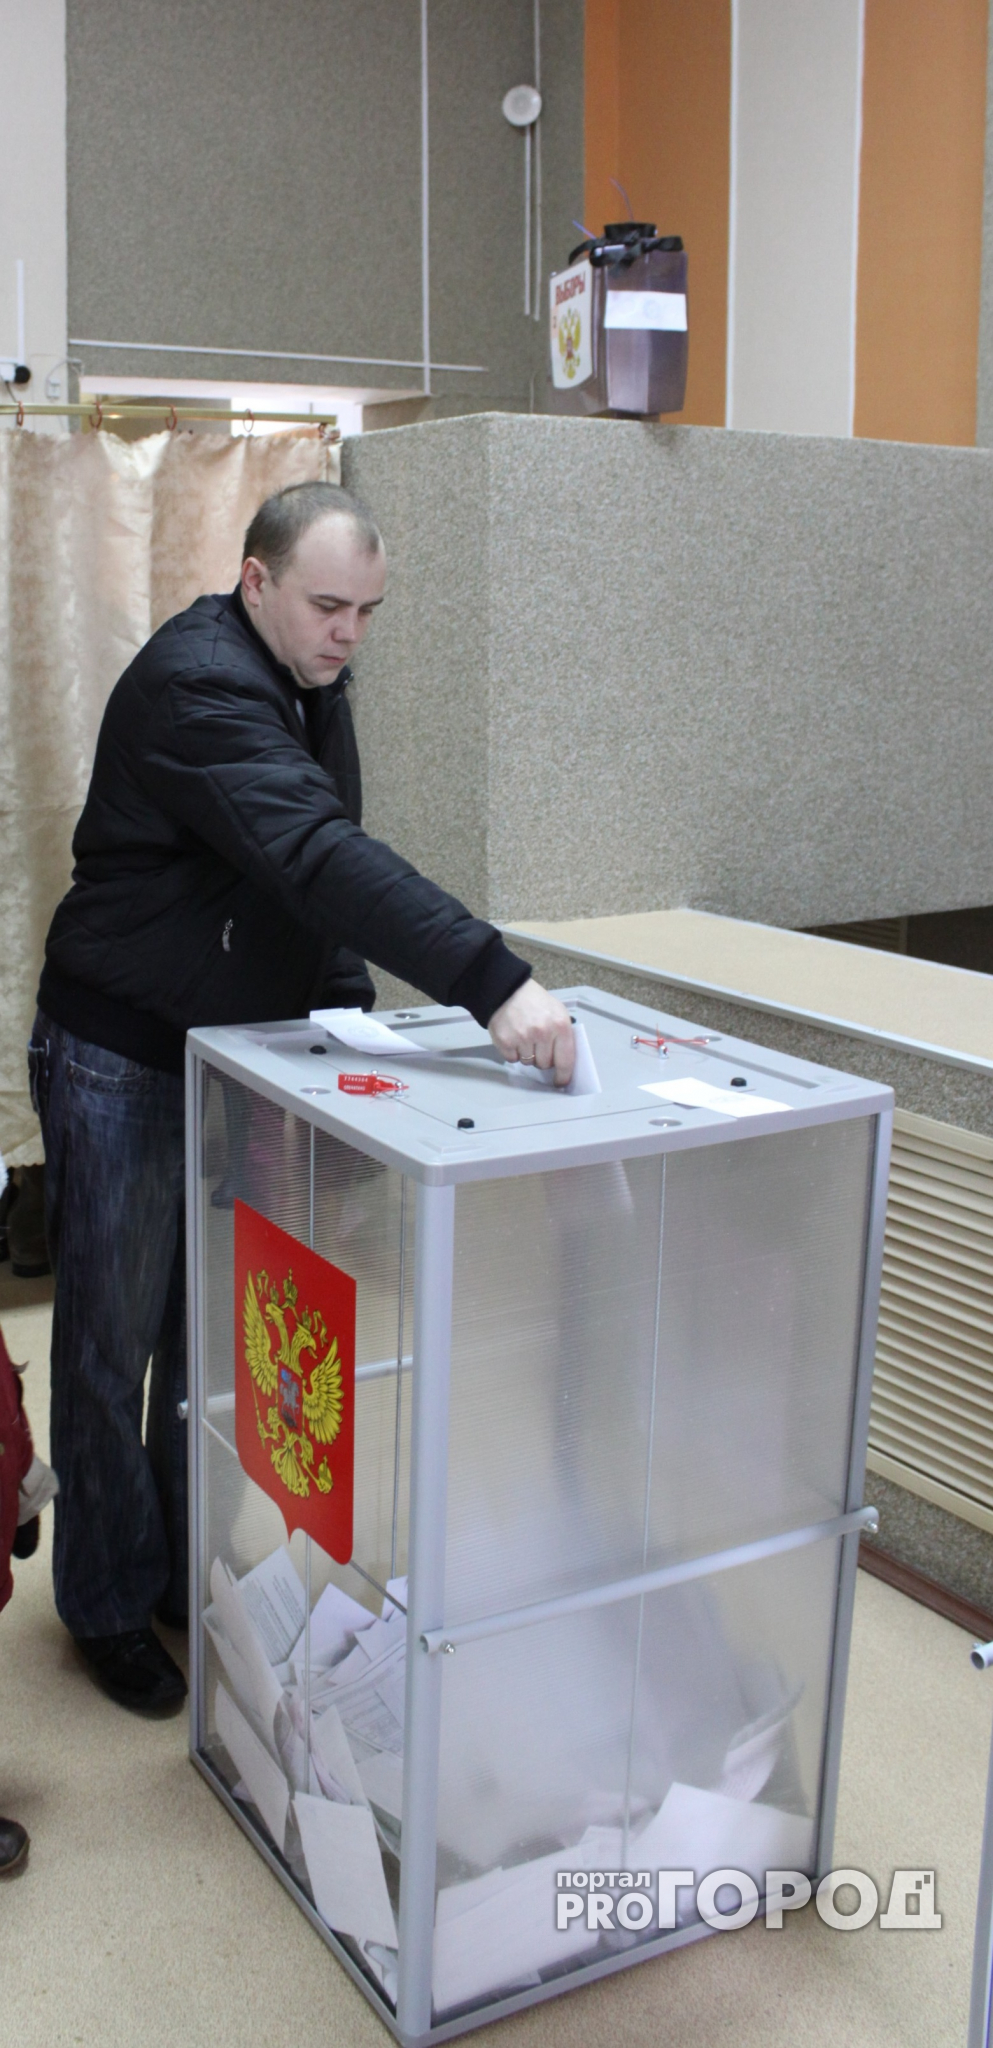 Итоги выборов: Владимир Путин набрал 77,67% голосов